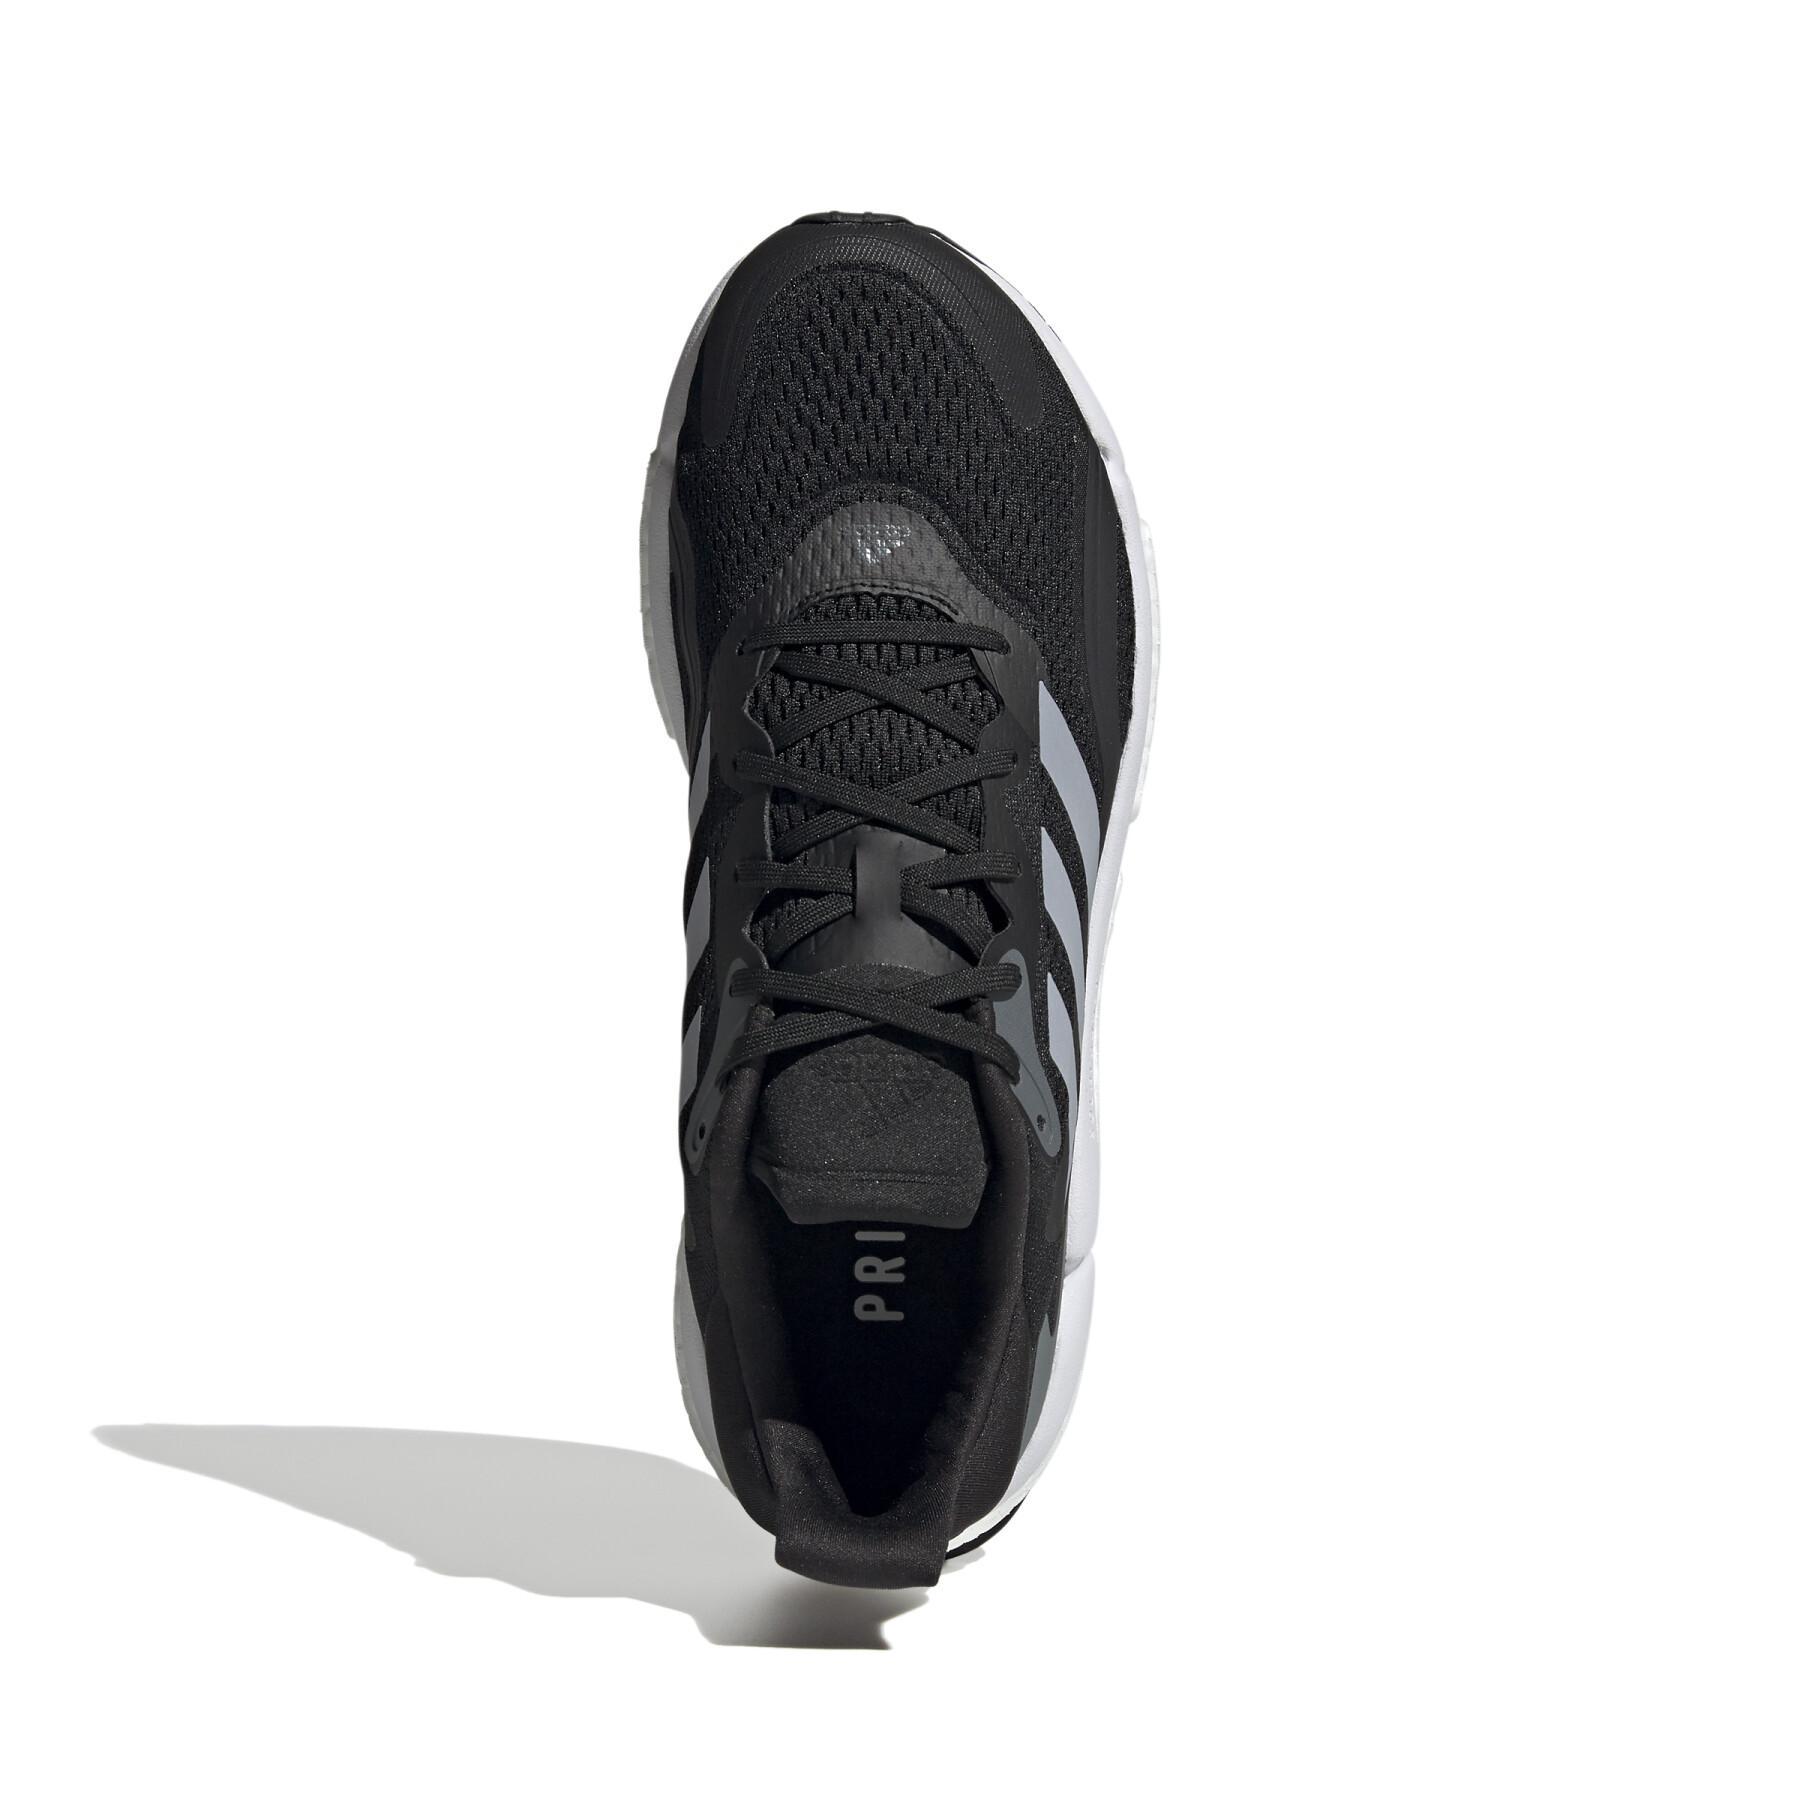 Schuhe Adidas solar boost 3M